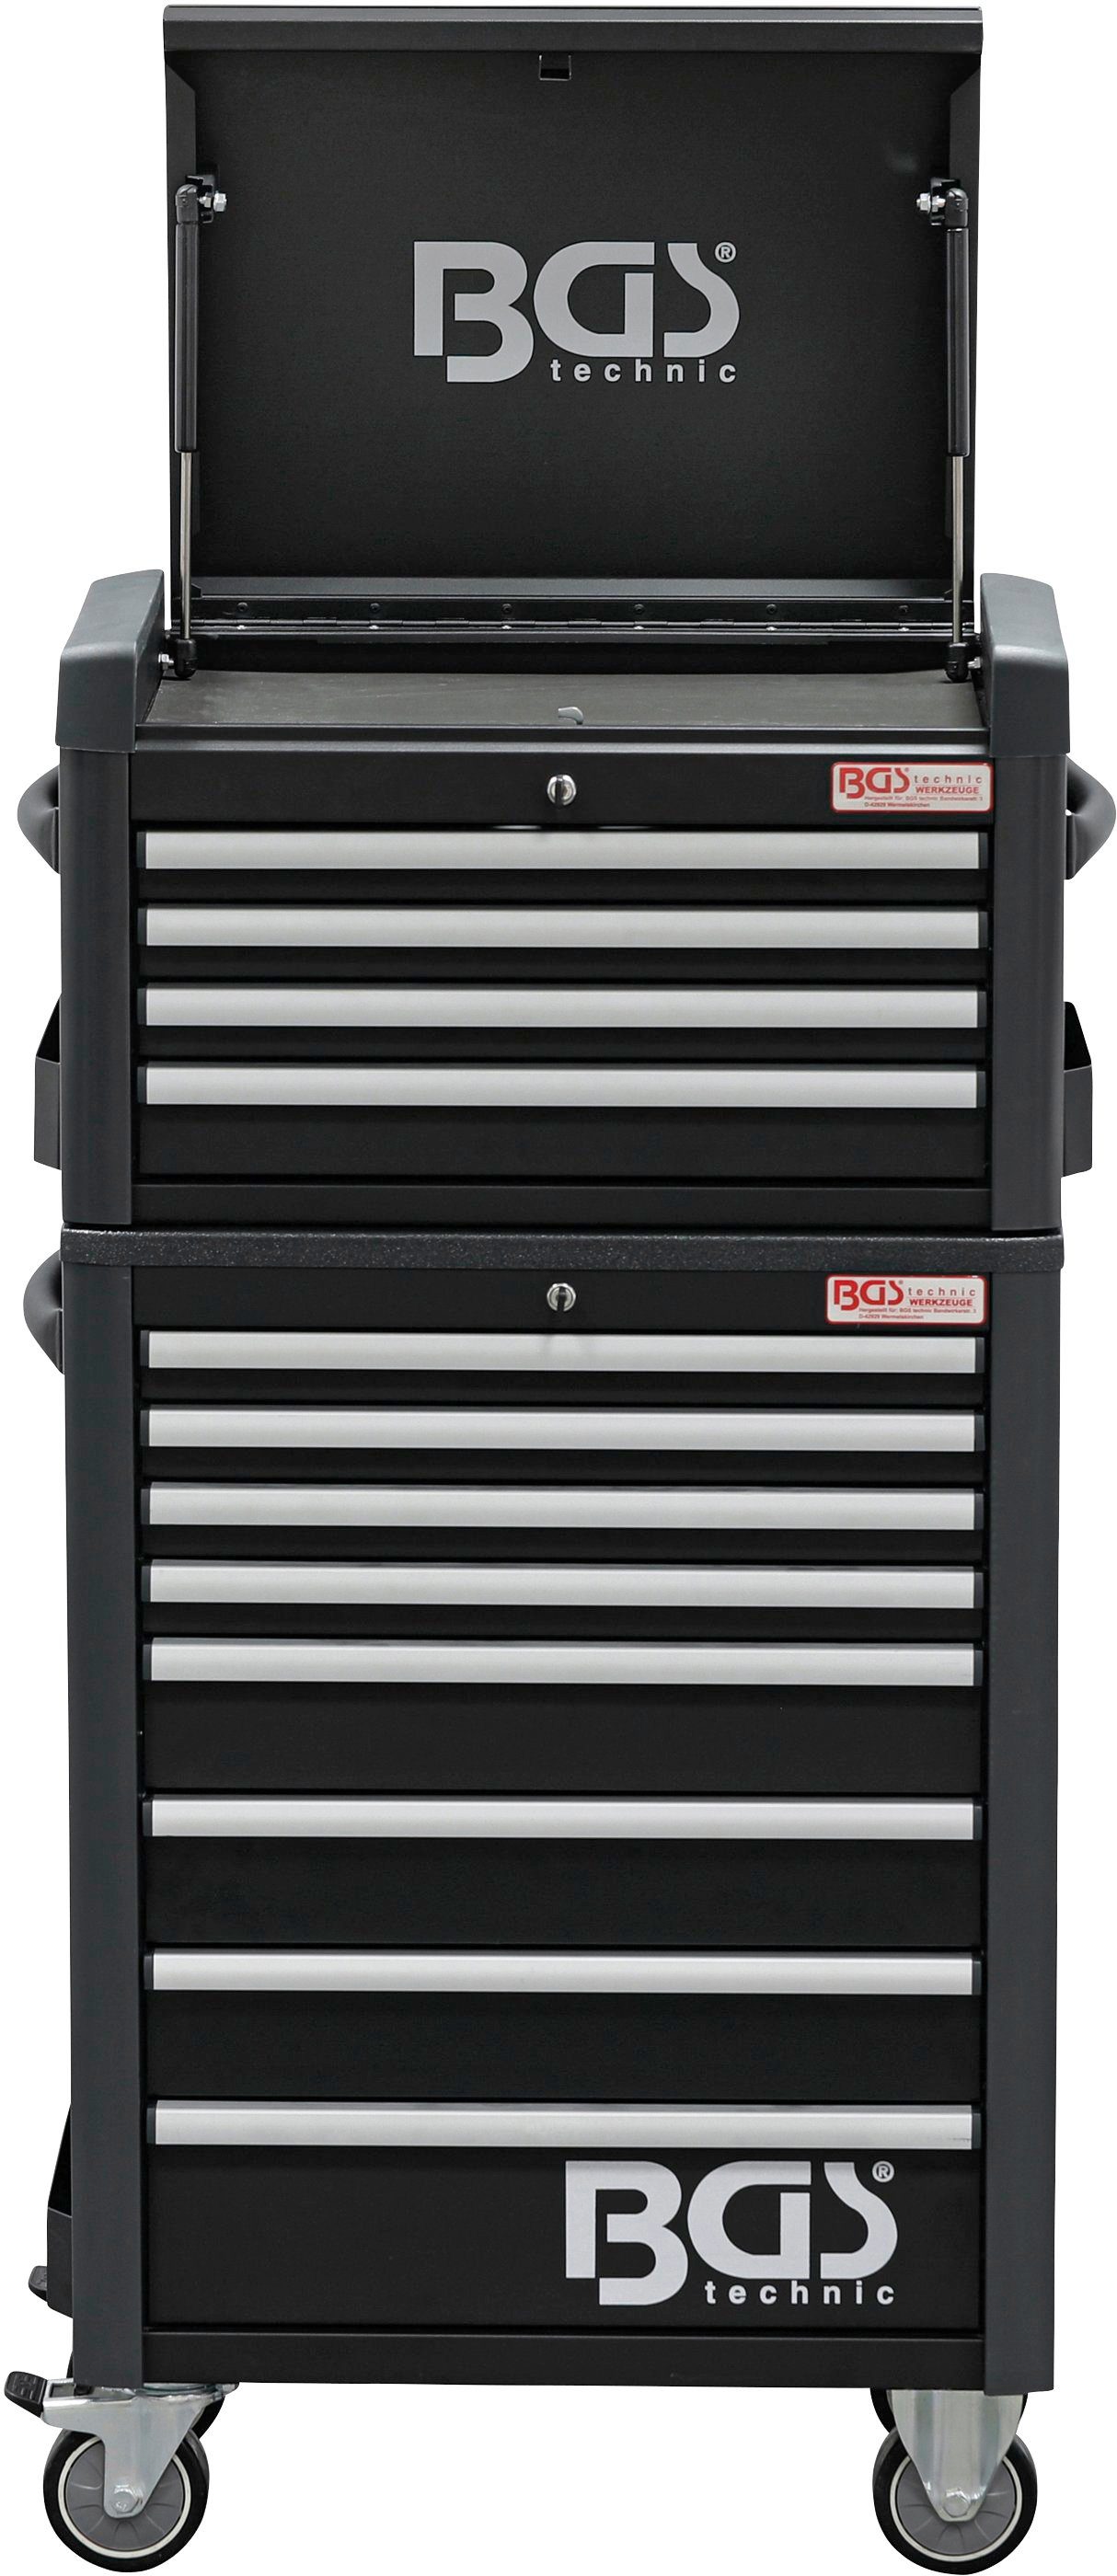 BGS Werkstattwagen Profi Standard Maxi, (263-tlg), 263-tlg. Werkzeugset, 12 Schubladen befüllt